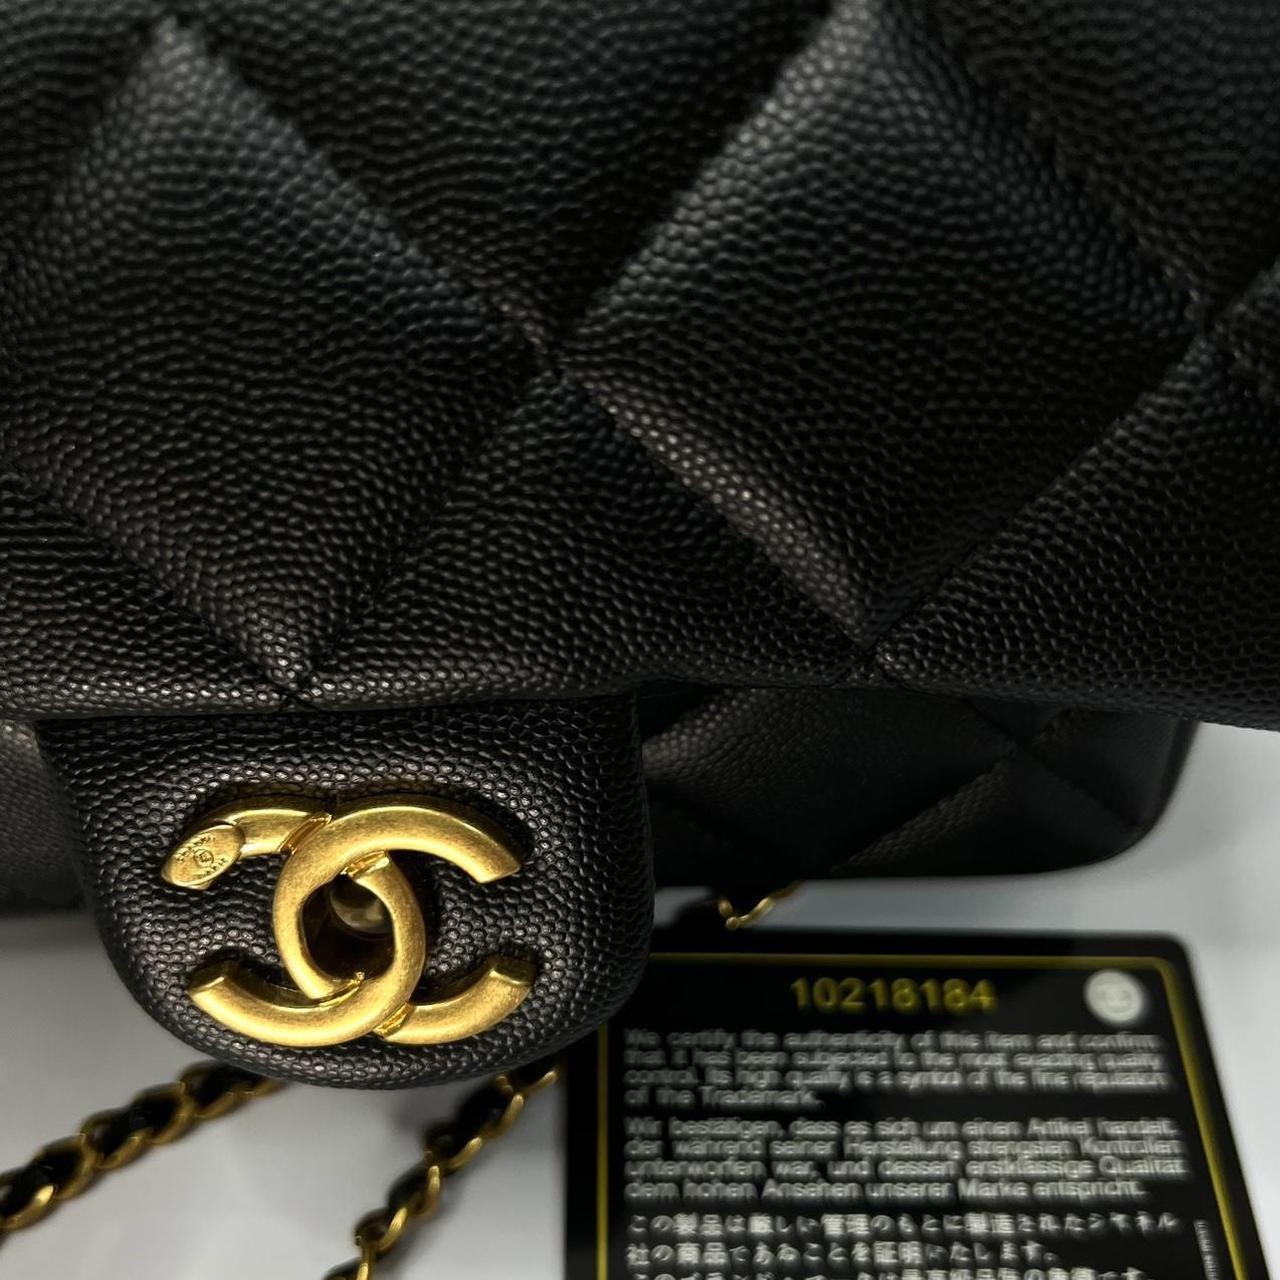 Chanel gift-bag - Depop